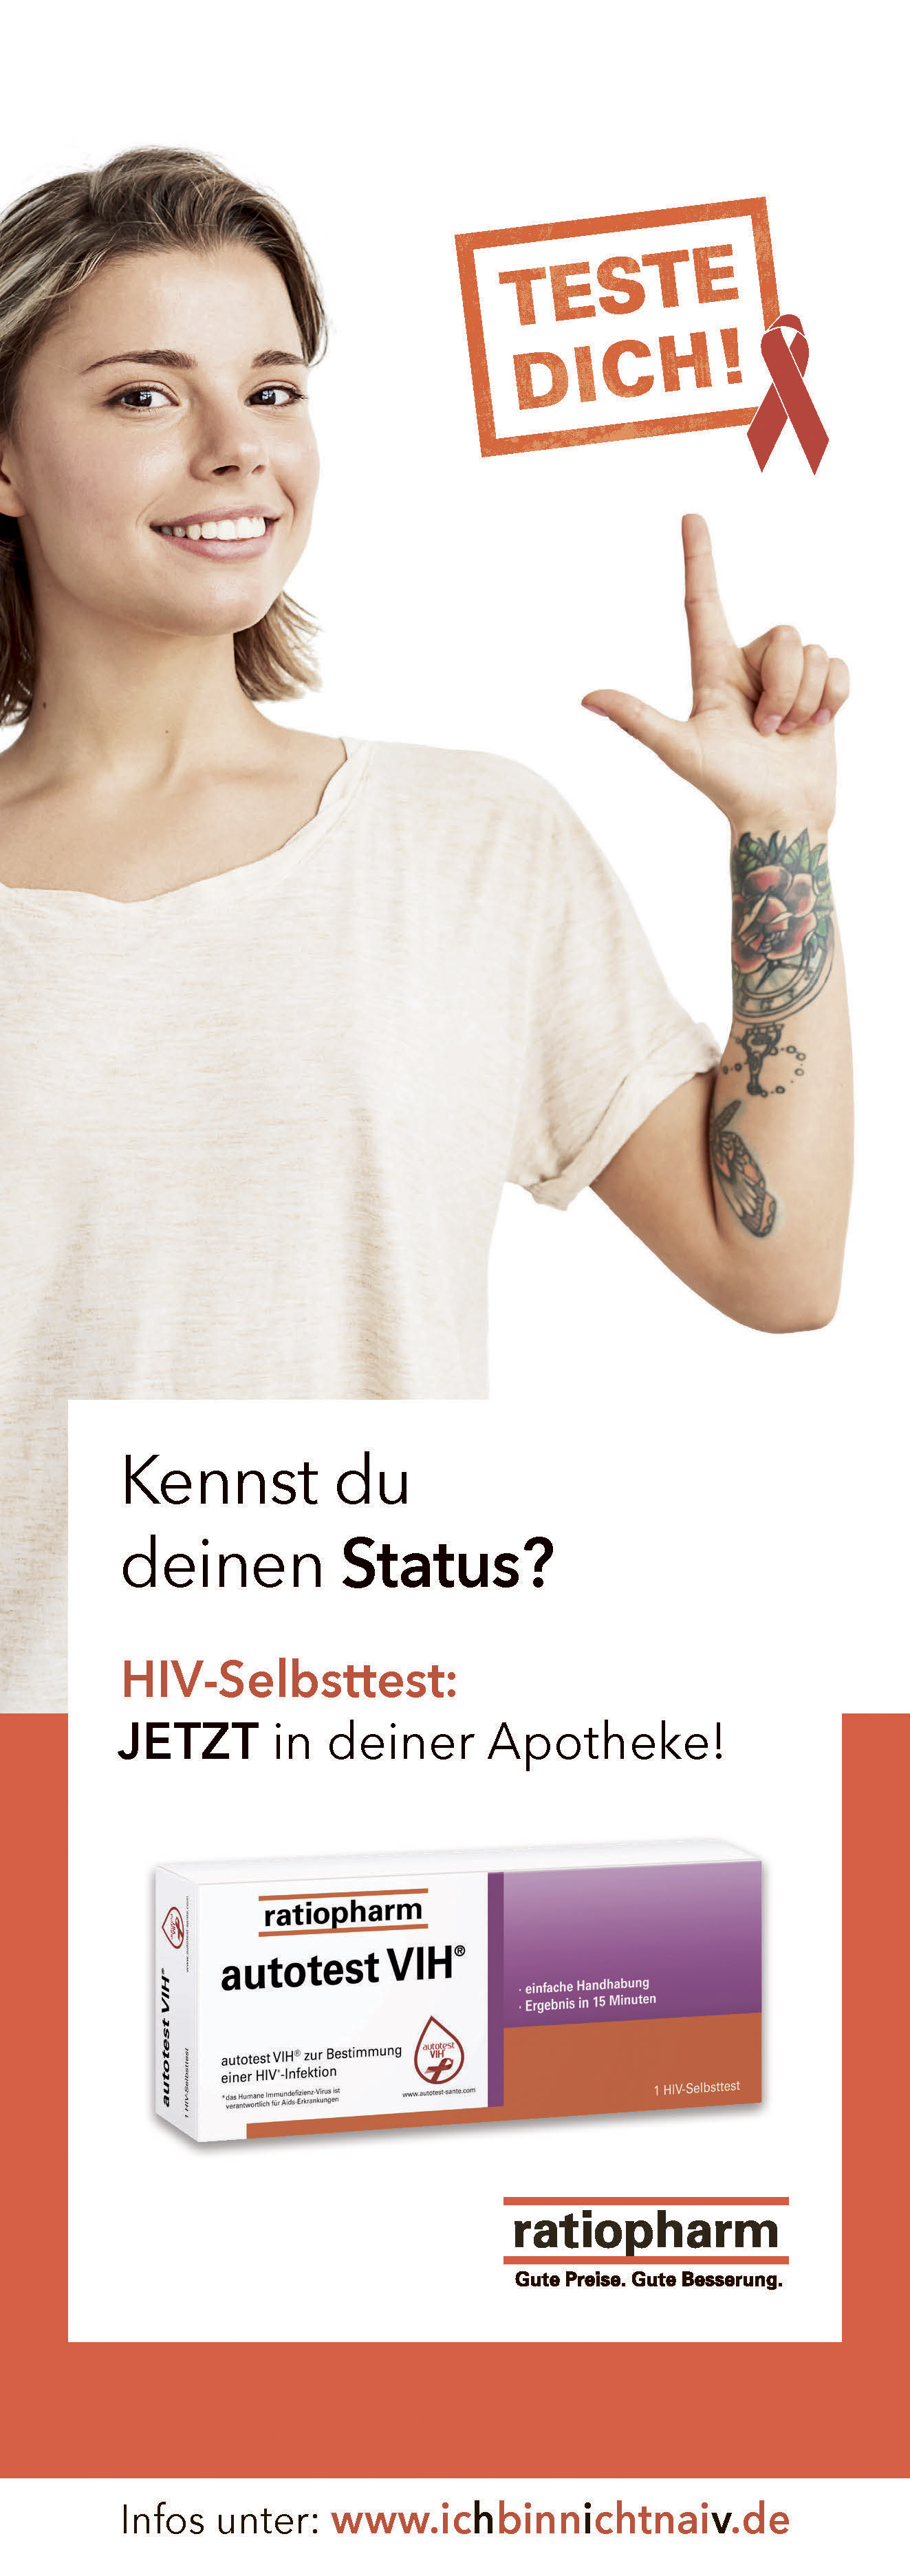 Anzeige: Teste dich! HIV-Selbsttest von Ratiopharm 